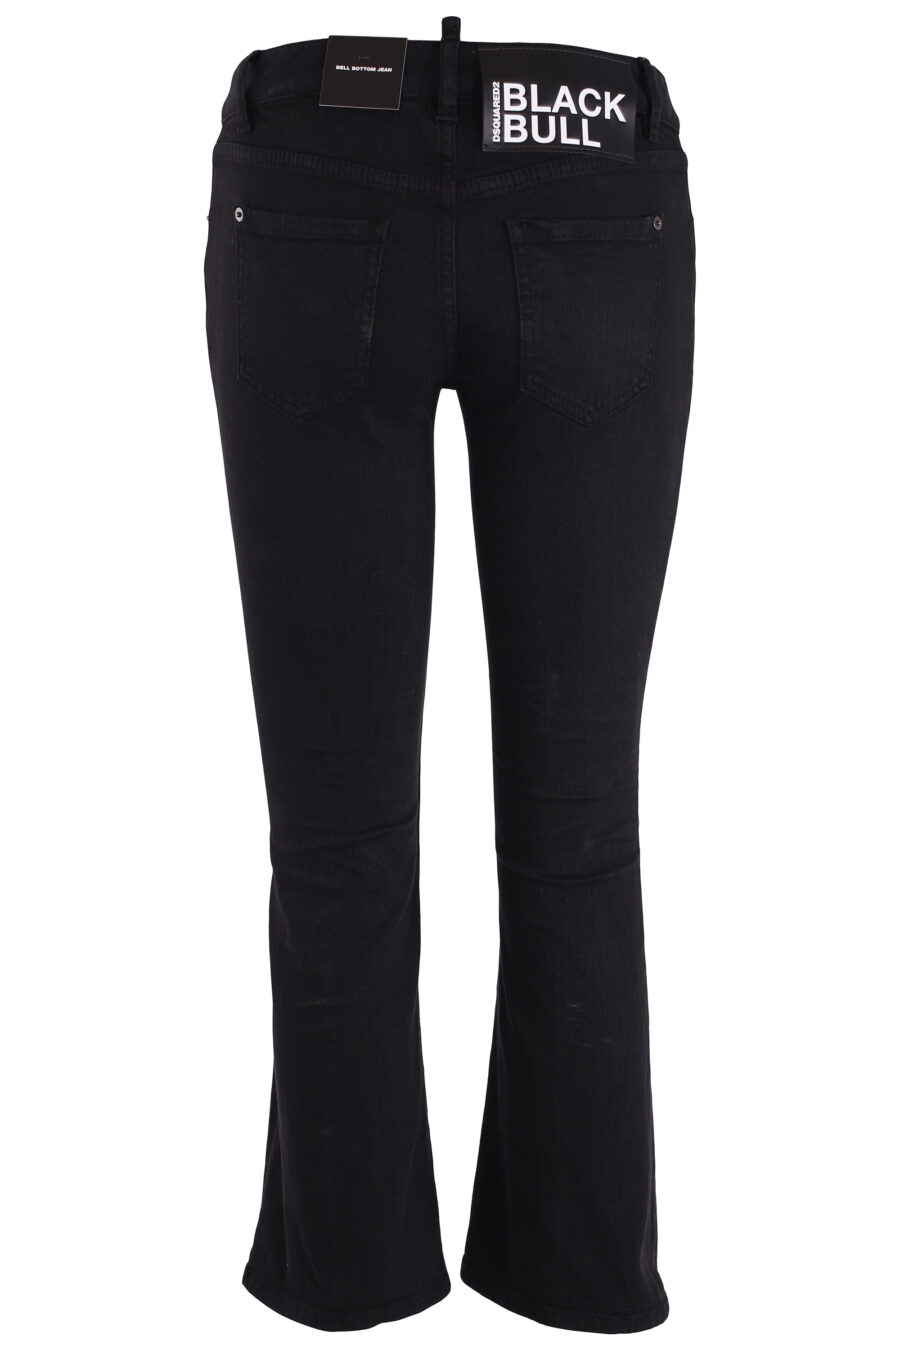 Jeans mit Schlaghose schwarz - IMG 3733